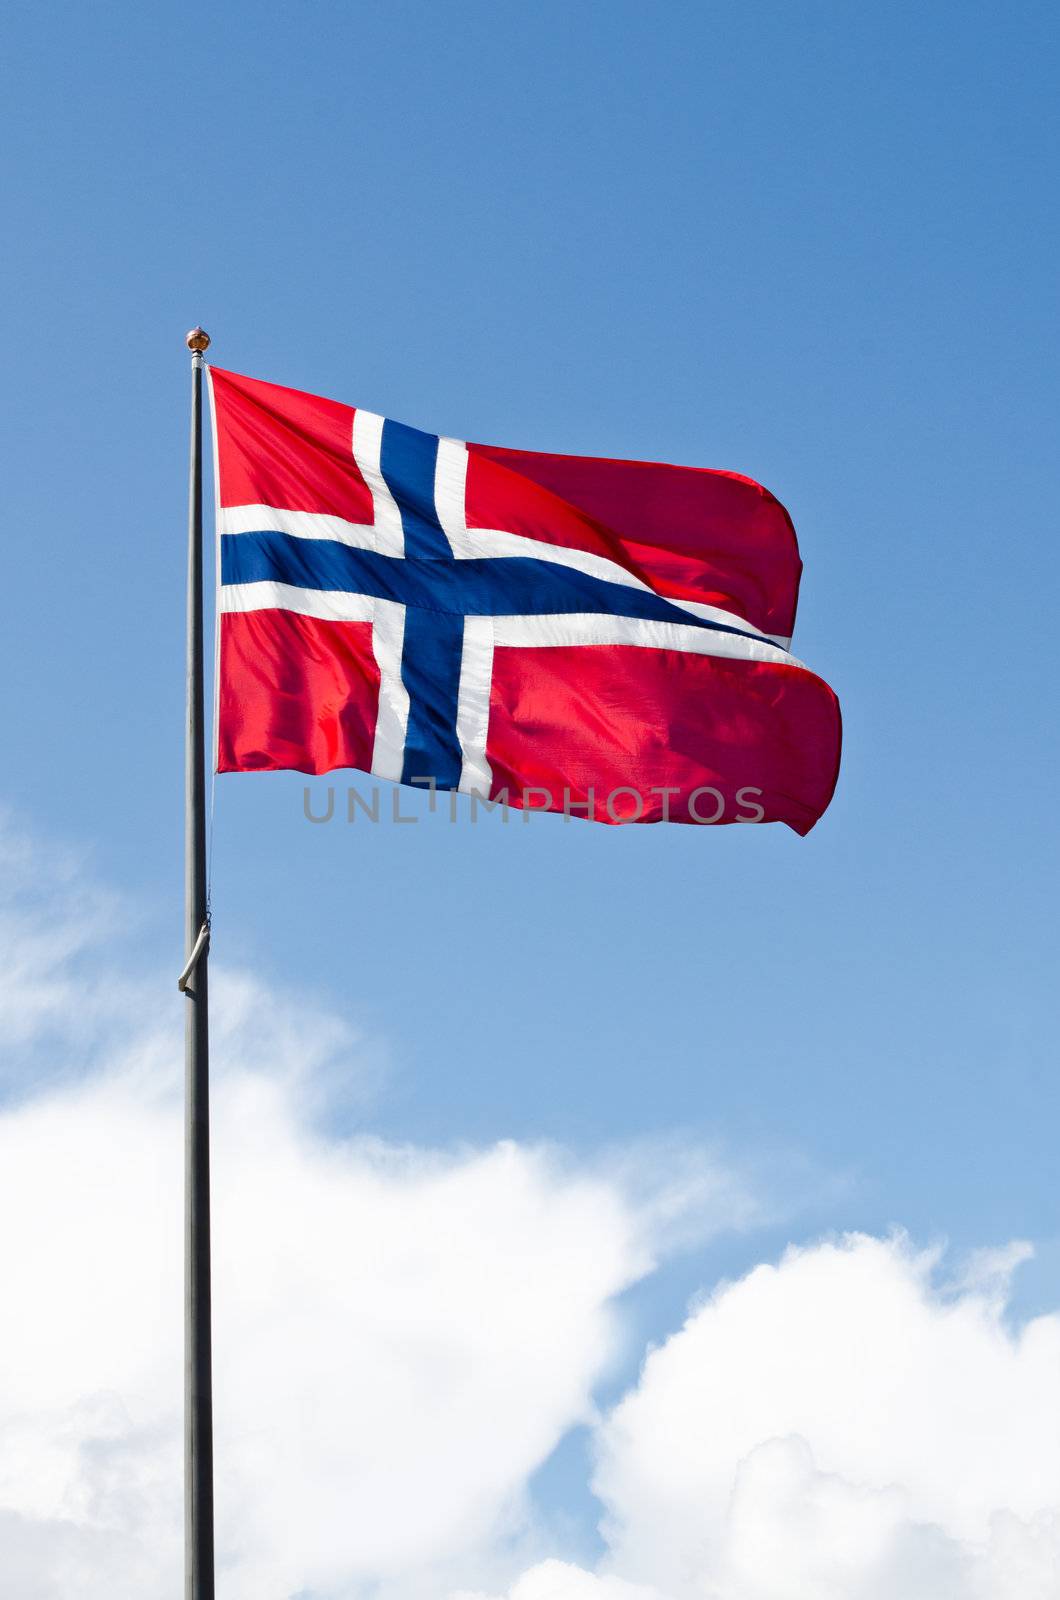 Norwegian flag on blue sky